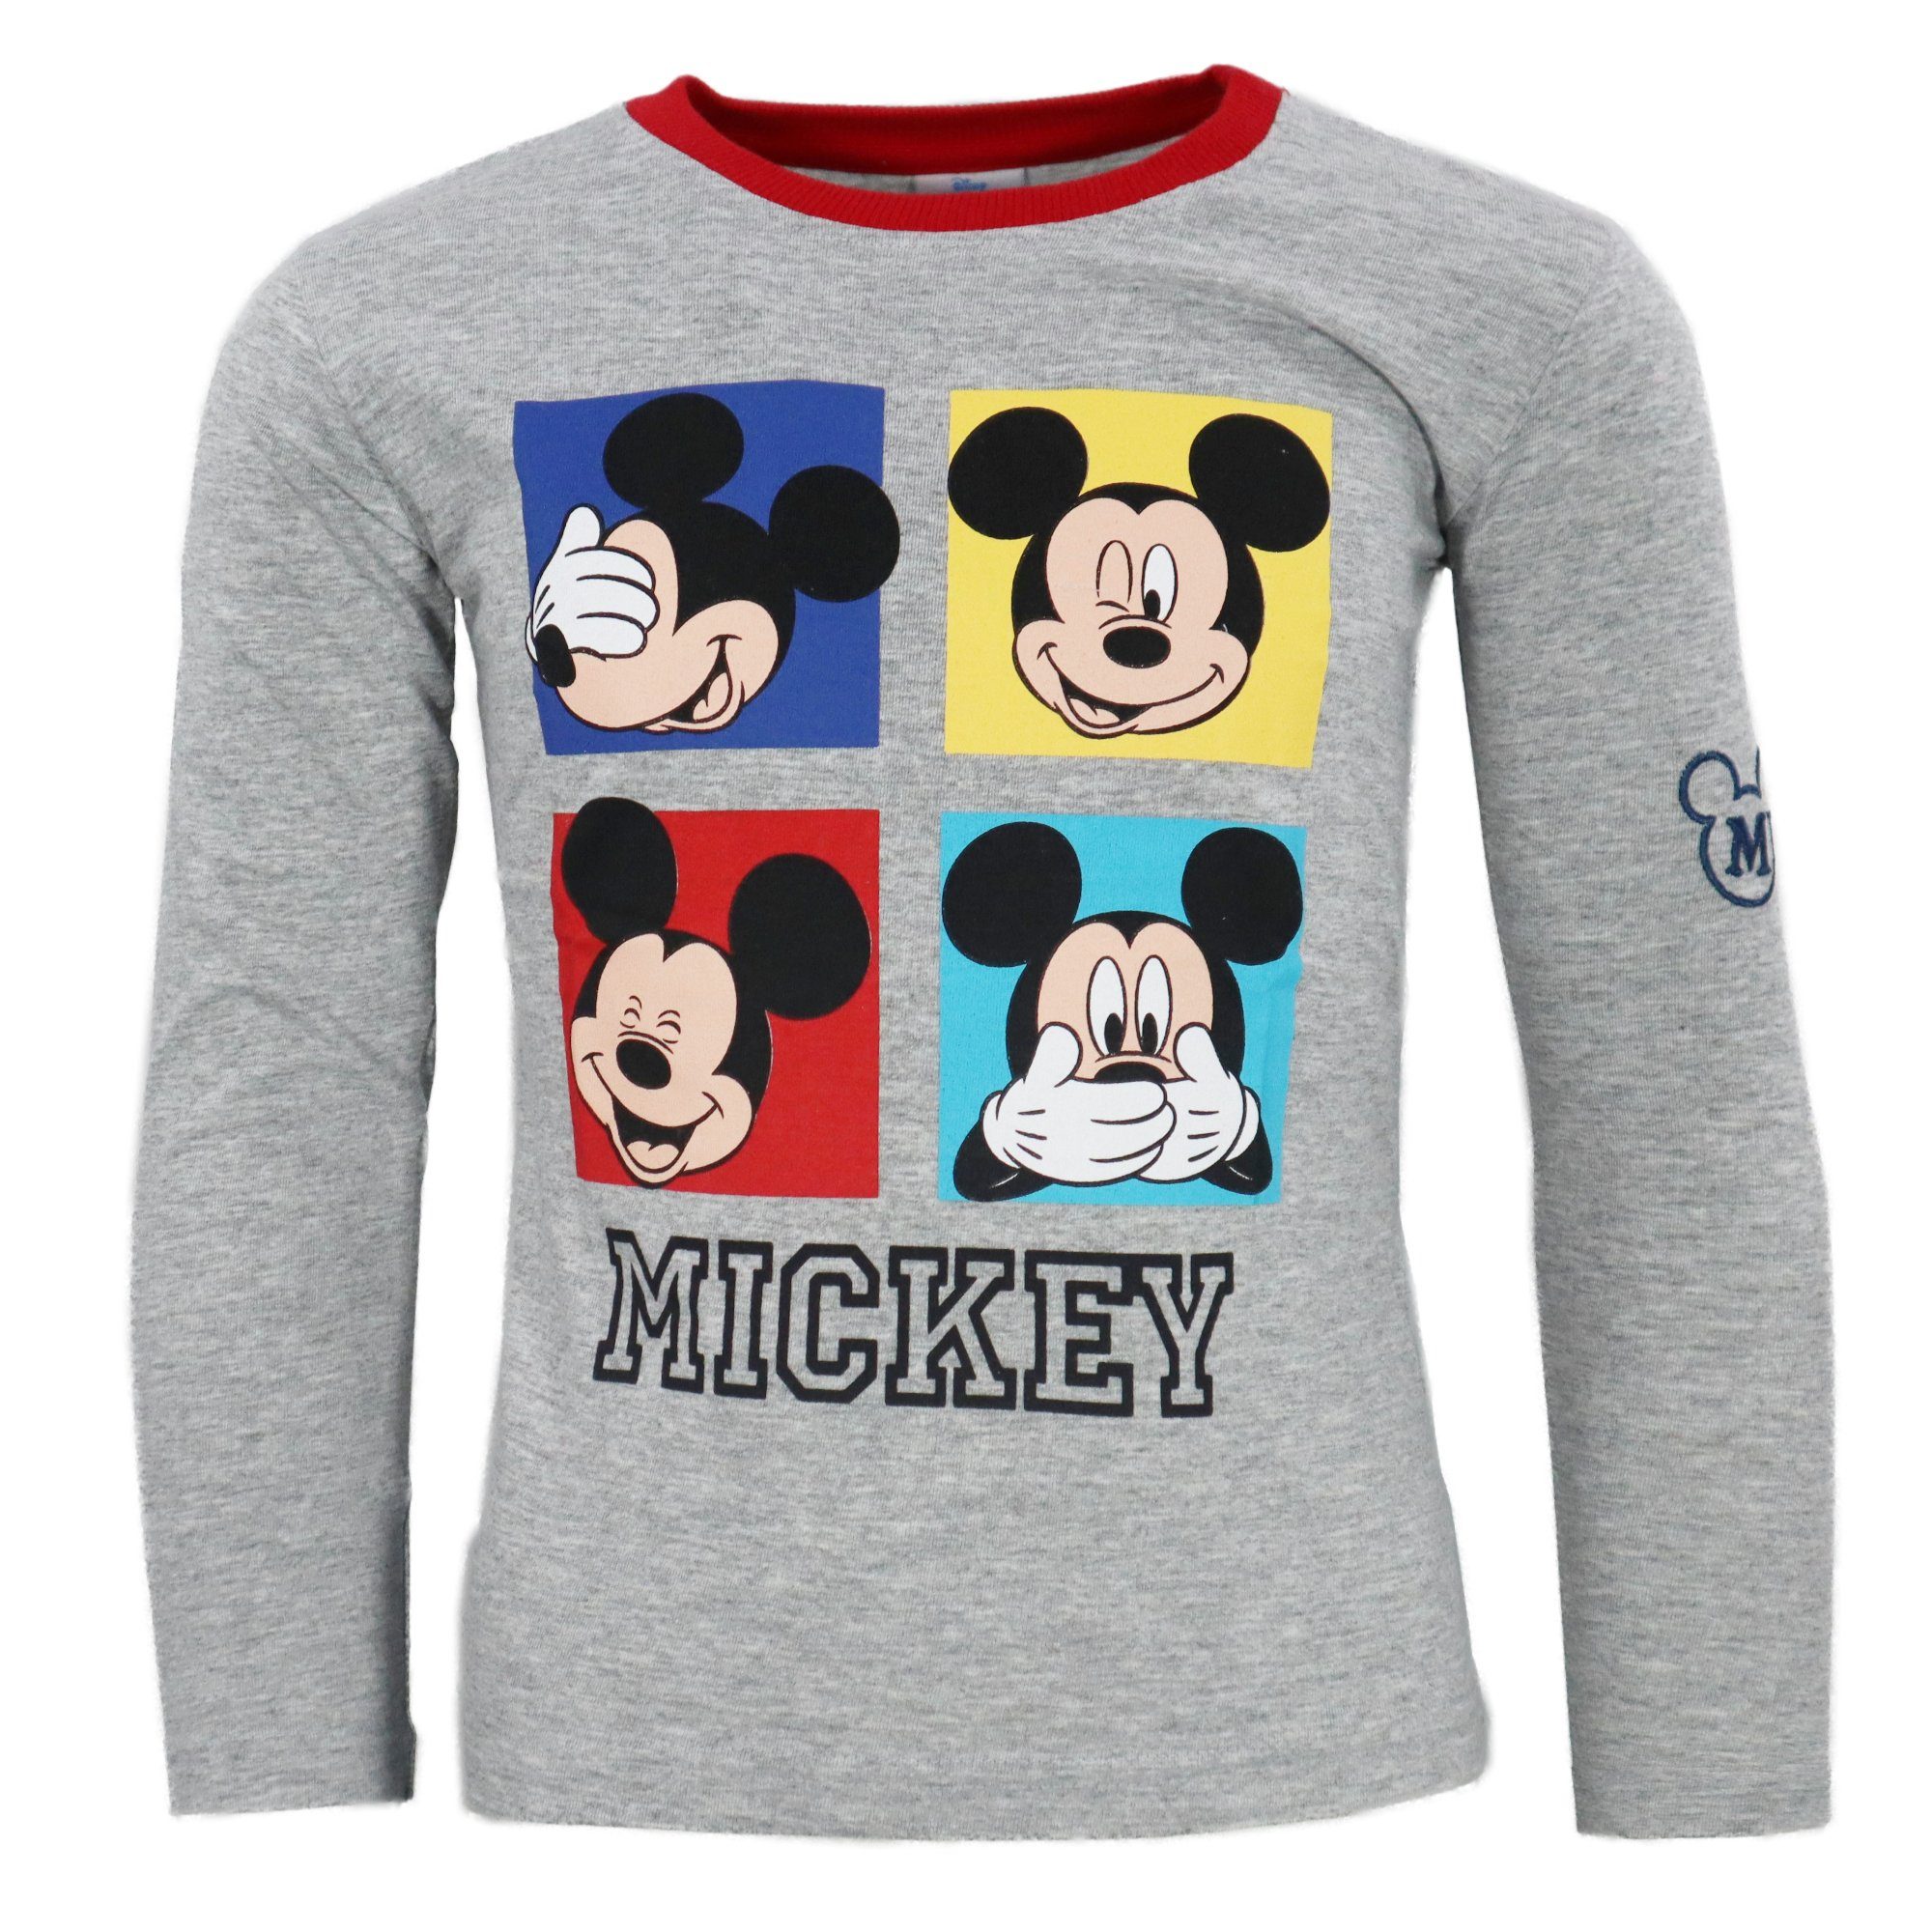 Kinder 98 Shirt Disney Mickey Langarm Jungen Gr. Grau 128 Langarmshirt Maus Disney bis